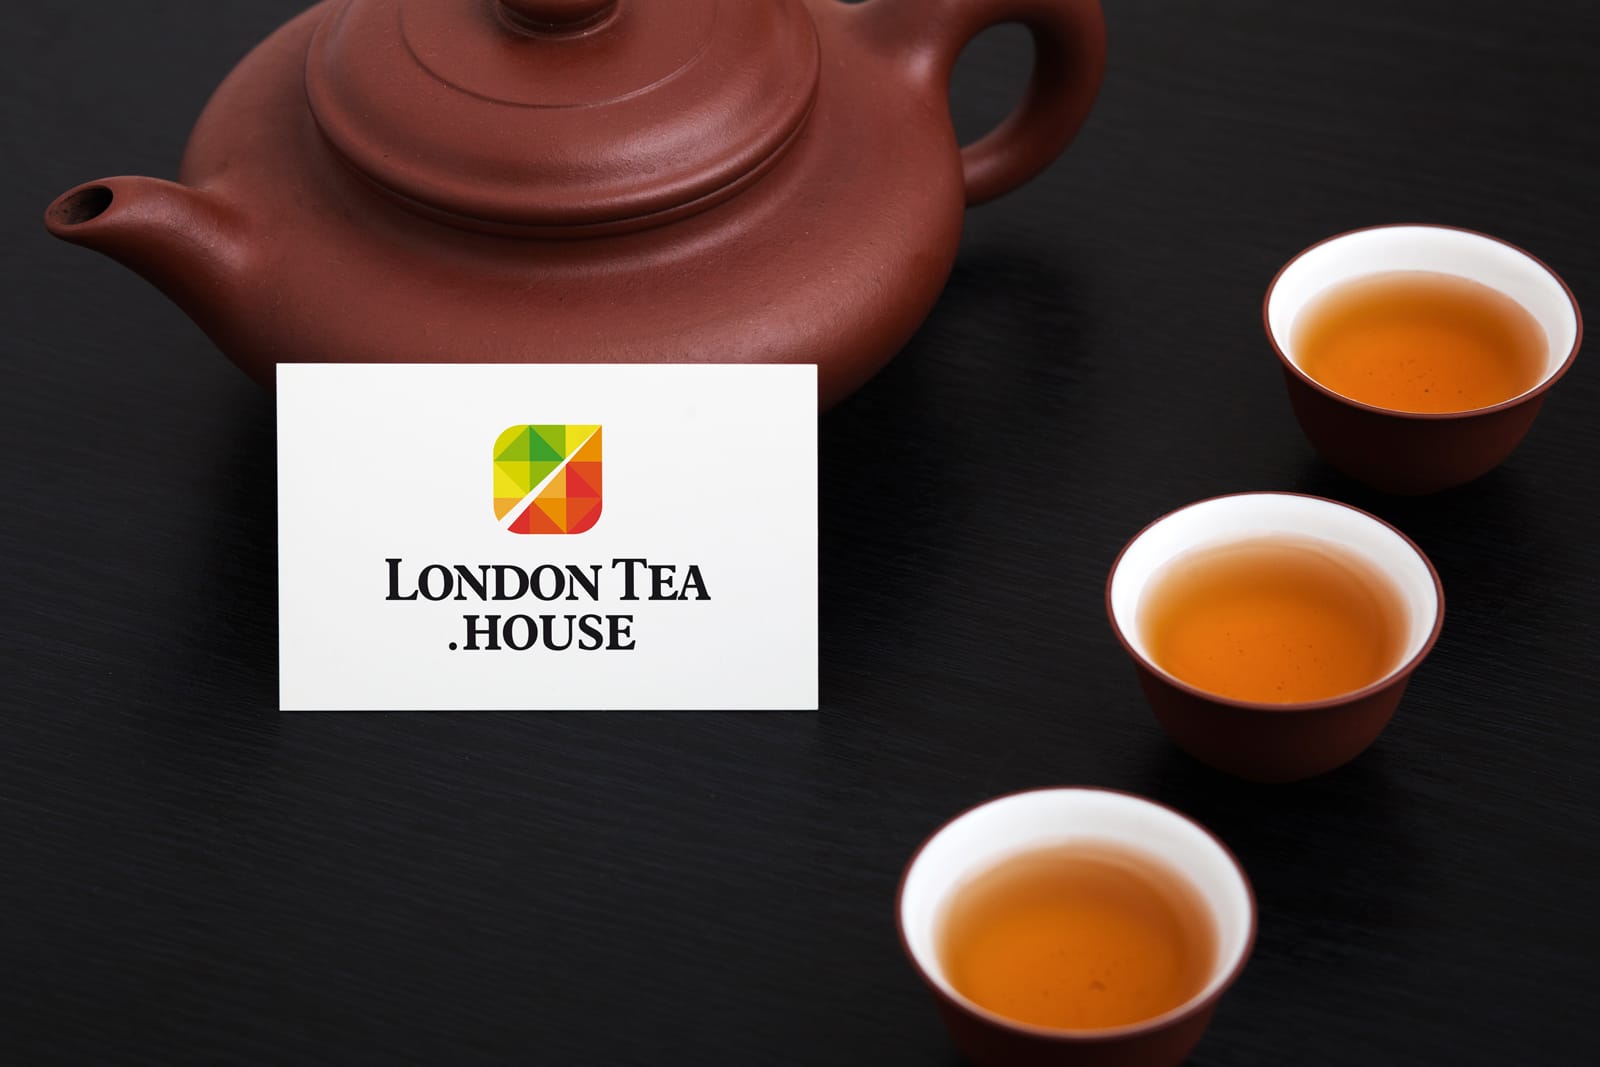 London Tea House logo firmy projektowanie Agencja brandingowa Moweli Creative